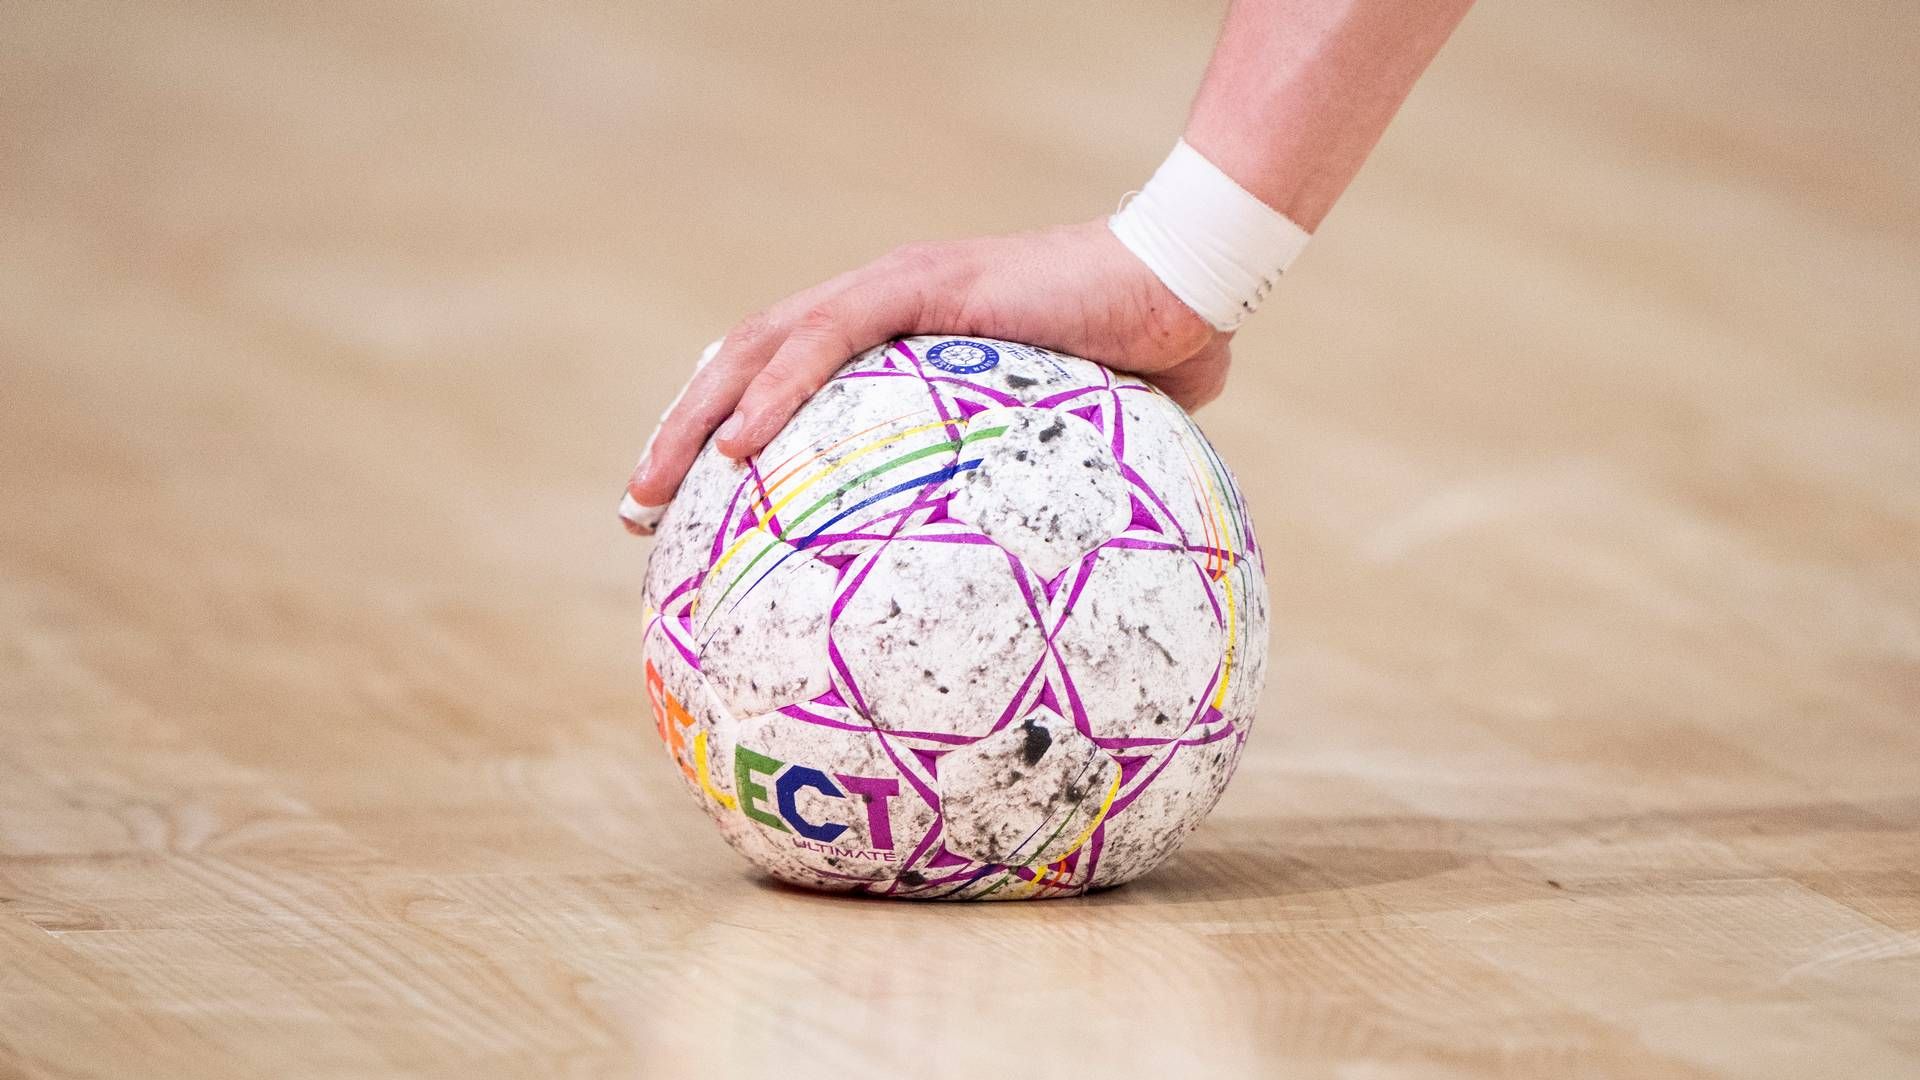 Specialdesignet håndbold fra Select, der blev brugt i landskamp mod Schweiz i Aarhus i weekenden. | Foto: Bo Amstrup